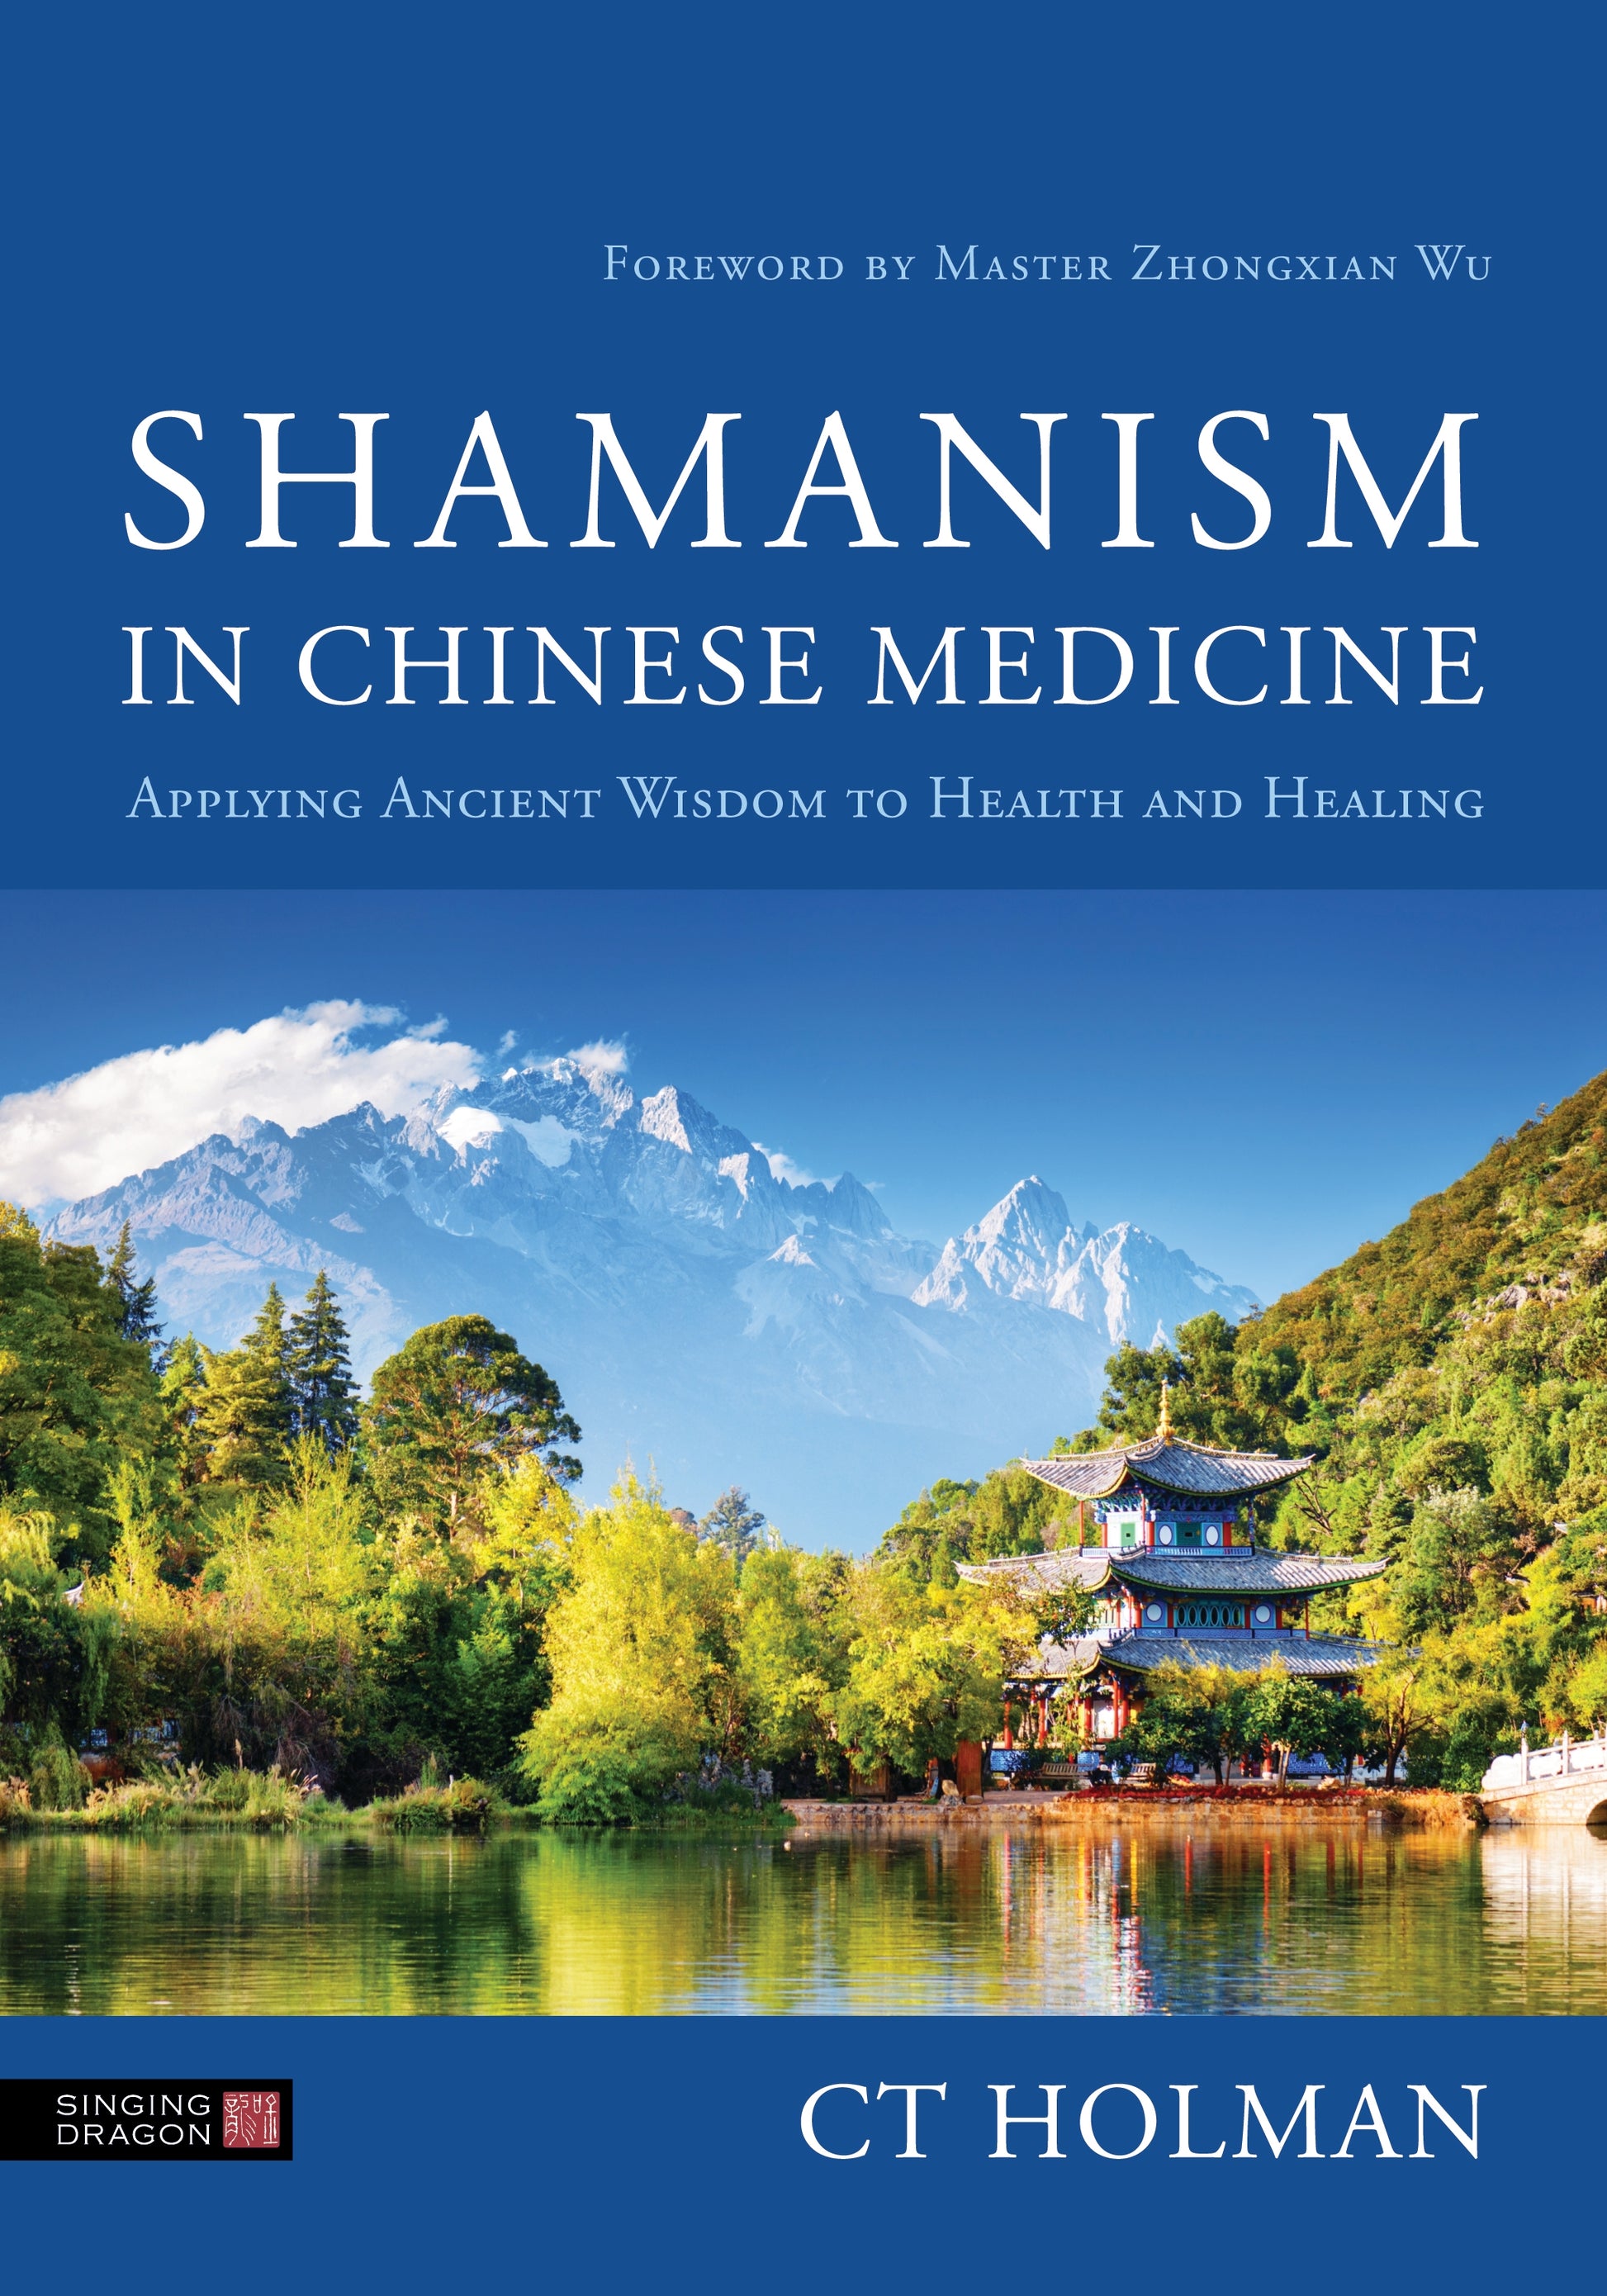 Shamanism in Chinese Medicine by Zhongxian Wu, CT Holman